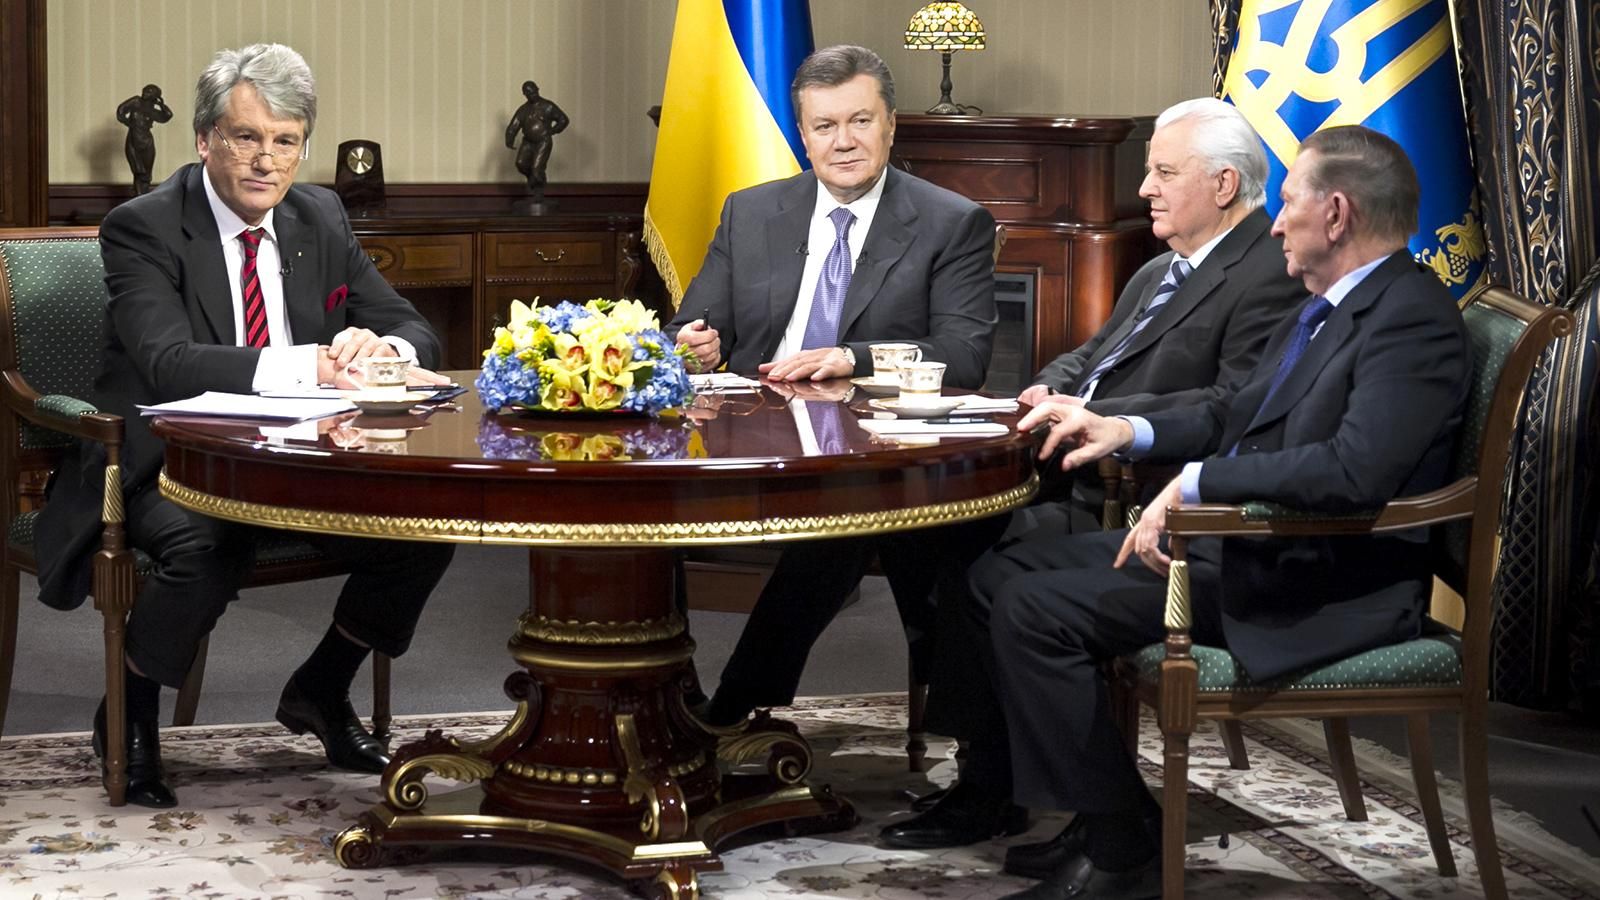 Хто з п'яти президентів зробив найбільше для України? Ваша думка